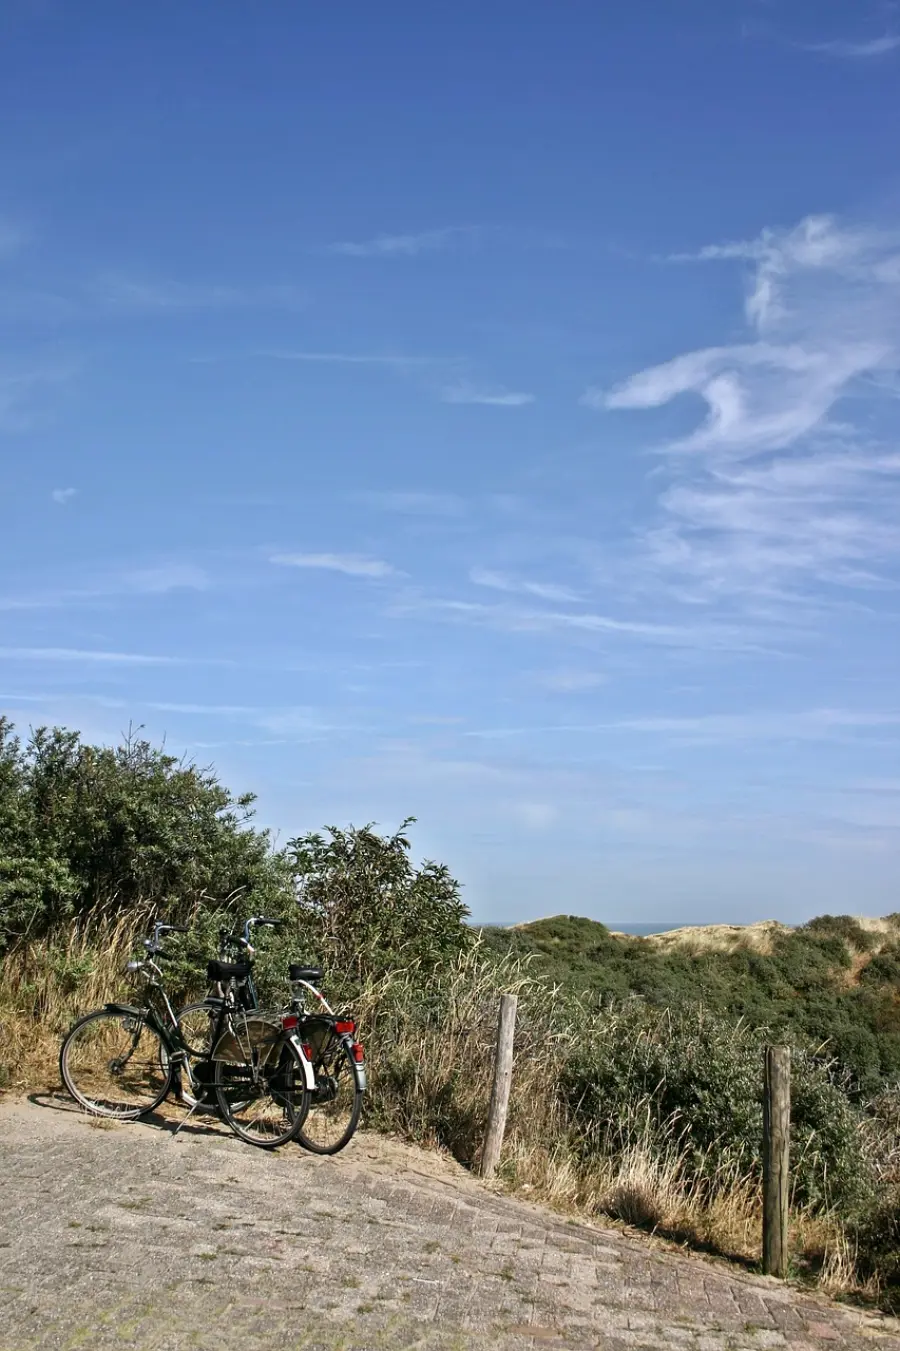 Zwei auf einem Weg geparkte Fahrräder vor der Kulisse von Sanddünen und grünen Sträuchern unter einem klaren blauen Himmel fangen die Essenz eines Radabenteuers auf der Insel Murter ein